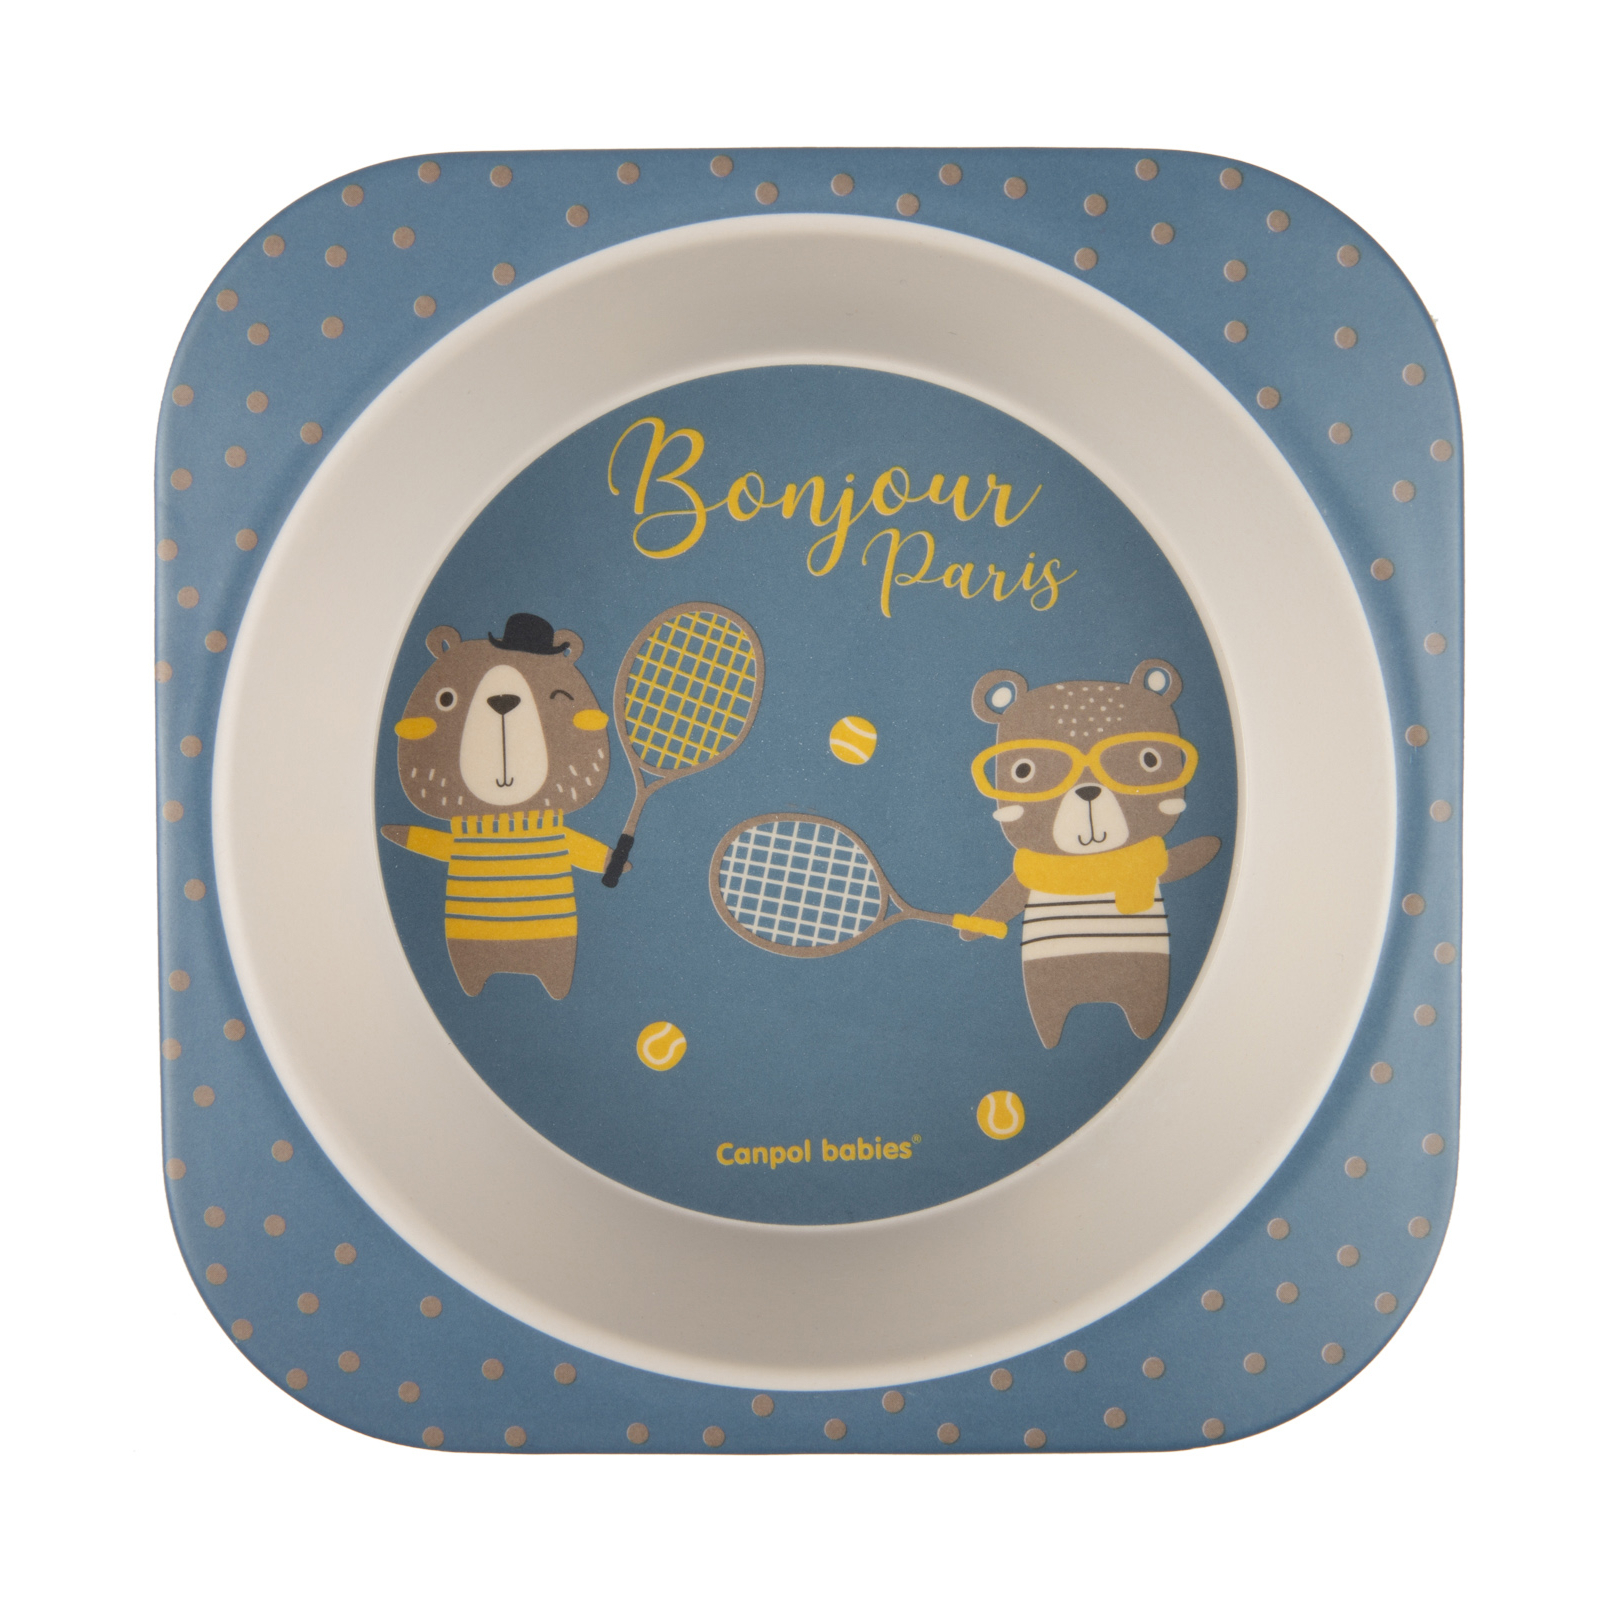 Набор детской посуды Canpol babies BONJOUR PARIS посуды 5 эл. синий (9/227_blu) изображение 4